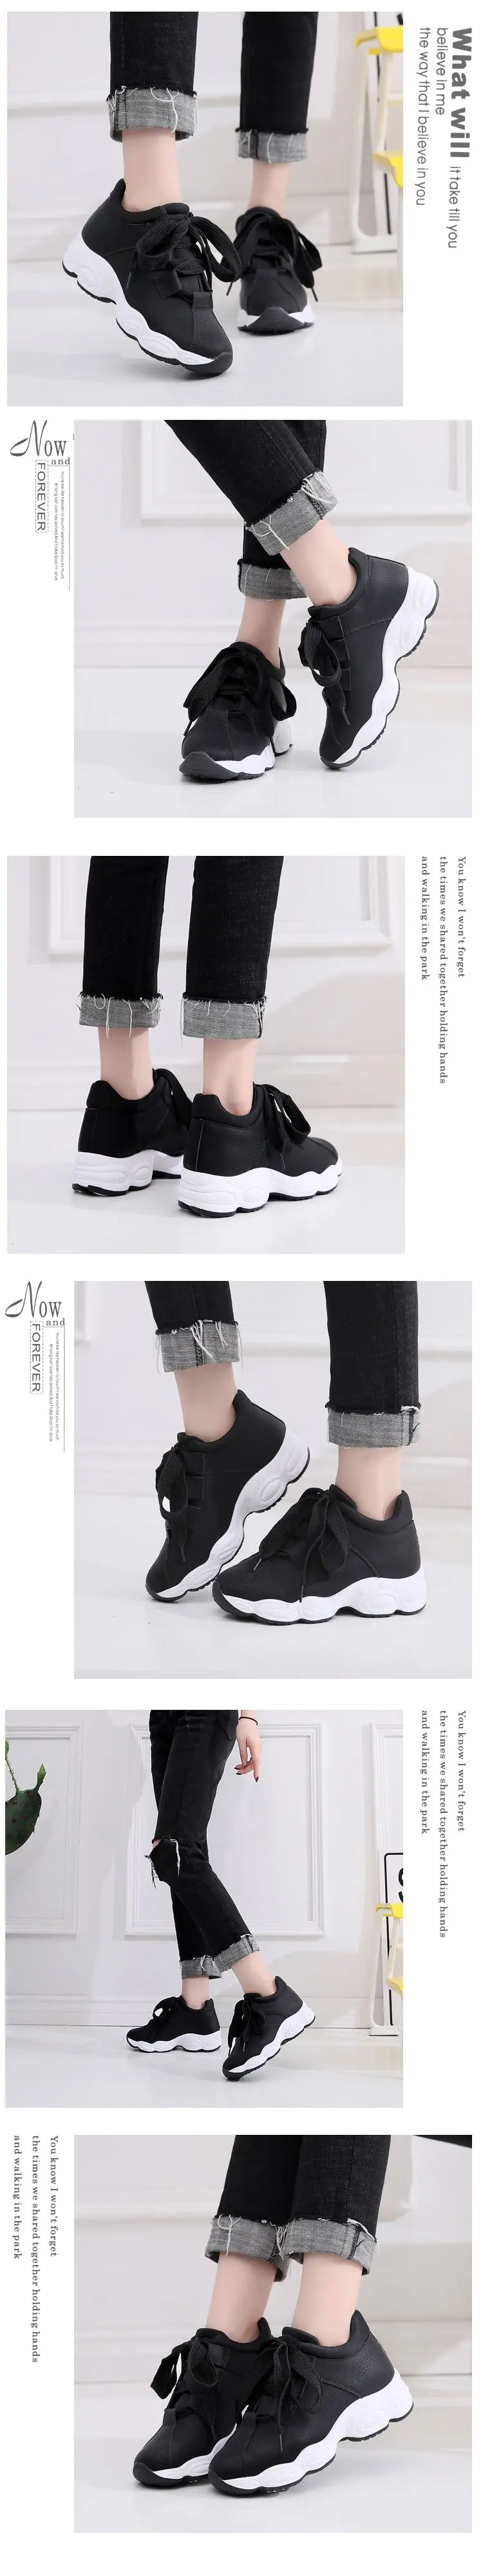 Горячая Распродажа, дышащие удобные женские кроссовки для бега, спортивная обувь на шнуровке, женские кроссовки черного и белого цвета, женская обувь на плоской подошве